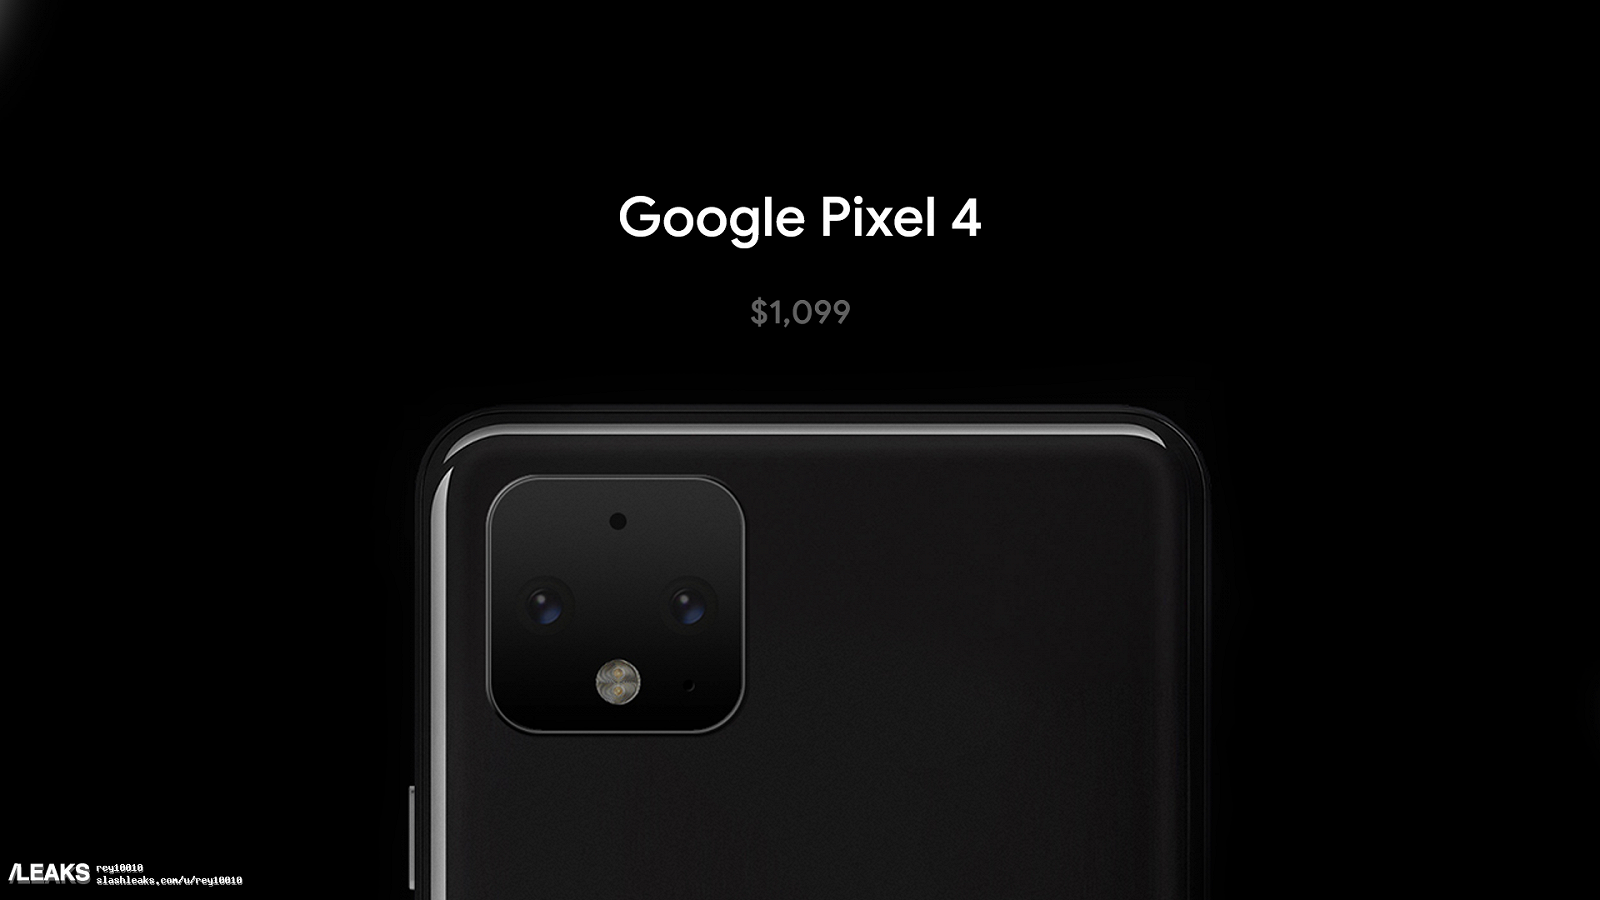 Новые живые фото Pixel 4 демонстрируют широкую верхнюю рамку над экраном, стоить смартфон будет минимум $1100